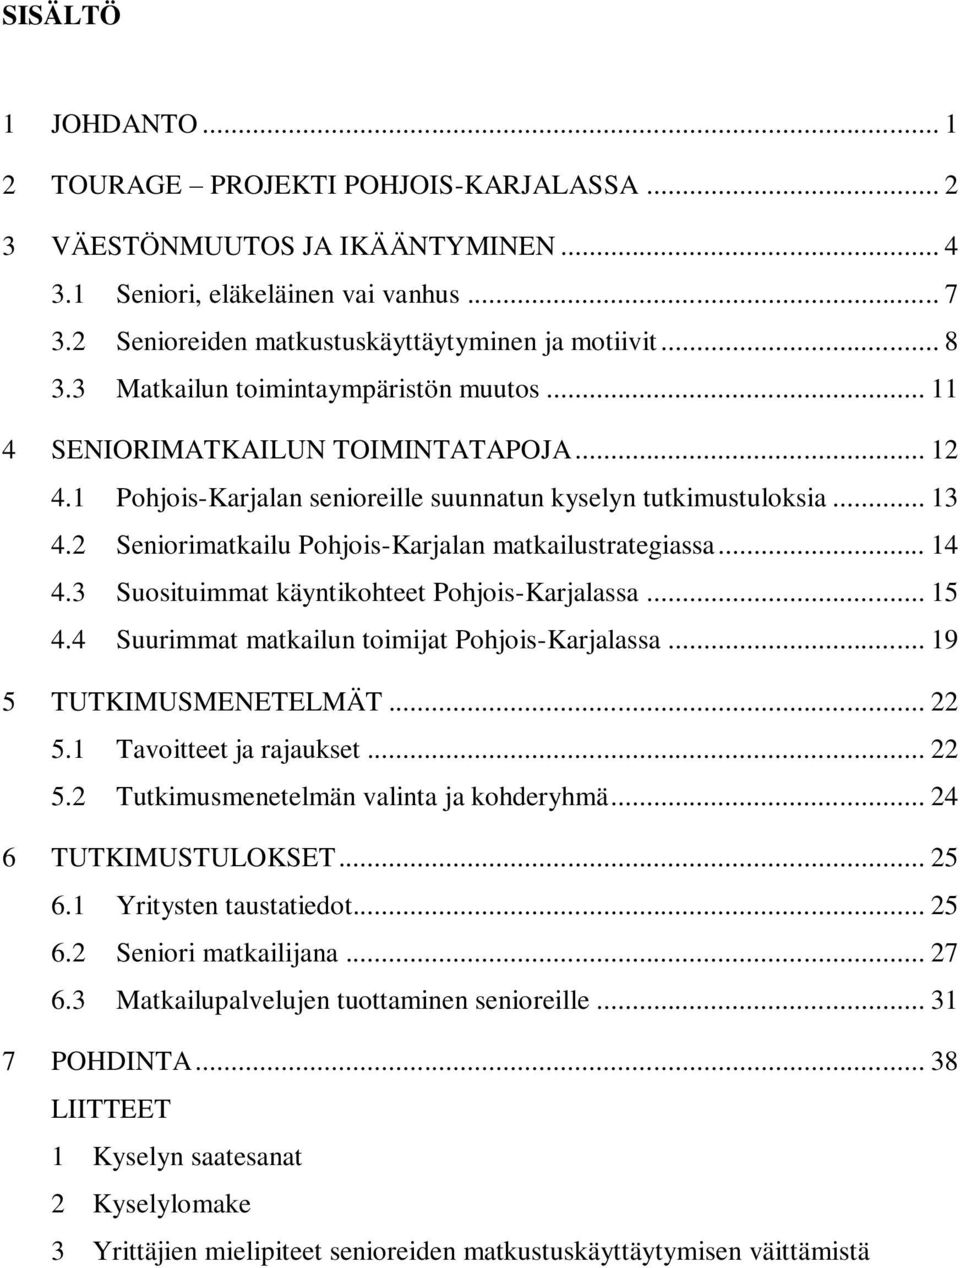 2 Seniorimatkailu Pohjois-Karjalan matkailustrategiassa... 14 4.3 Suosituimmat käyntikohteet Pohjois-Karjalassa... 15 4.4 Suurimmat matkailun toimijat Pohjois-Karjalassa... 19 5 TUTKIMUSMENETELMÄT.